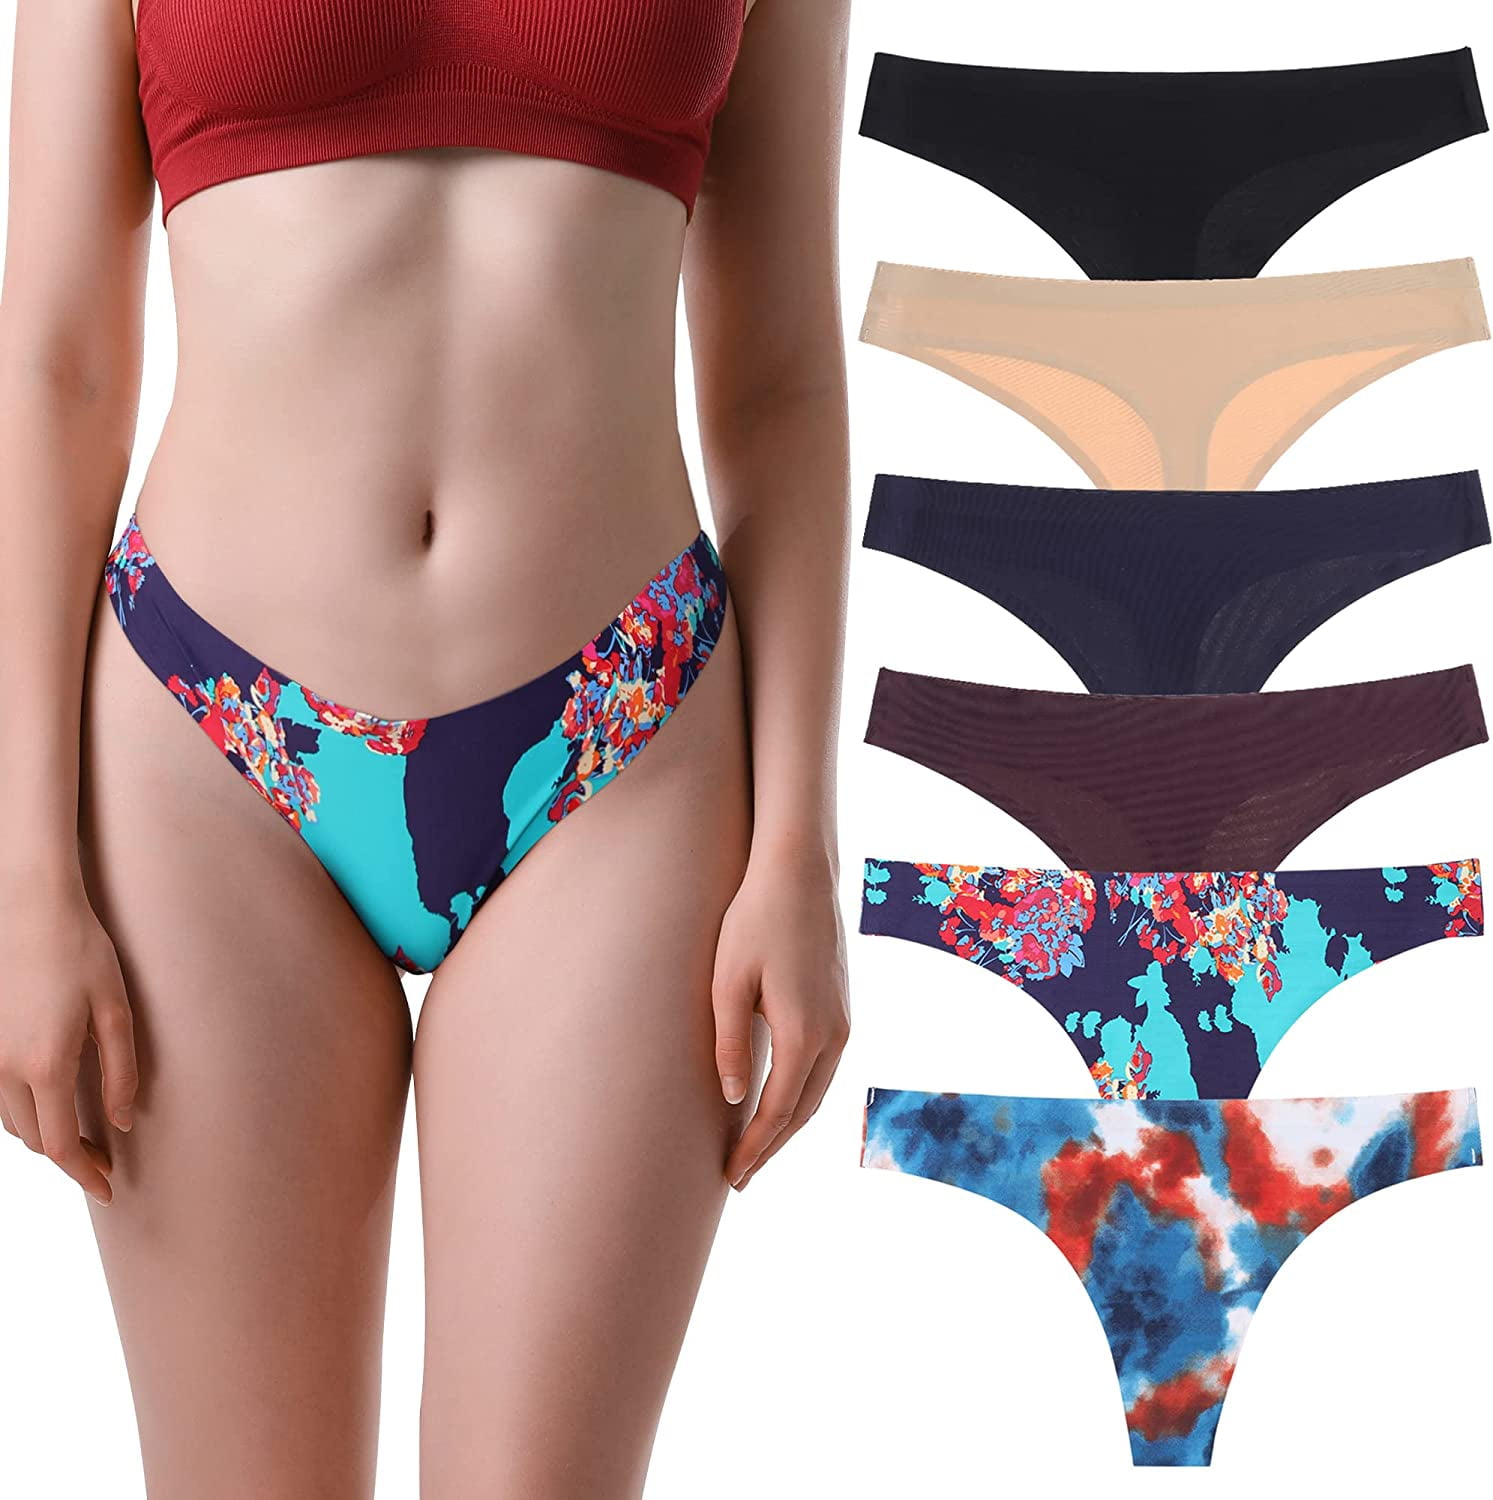 BIONEK Women's Satin Bikini Panties - Pack of 6 Silky Lace Underwear